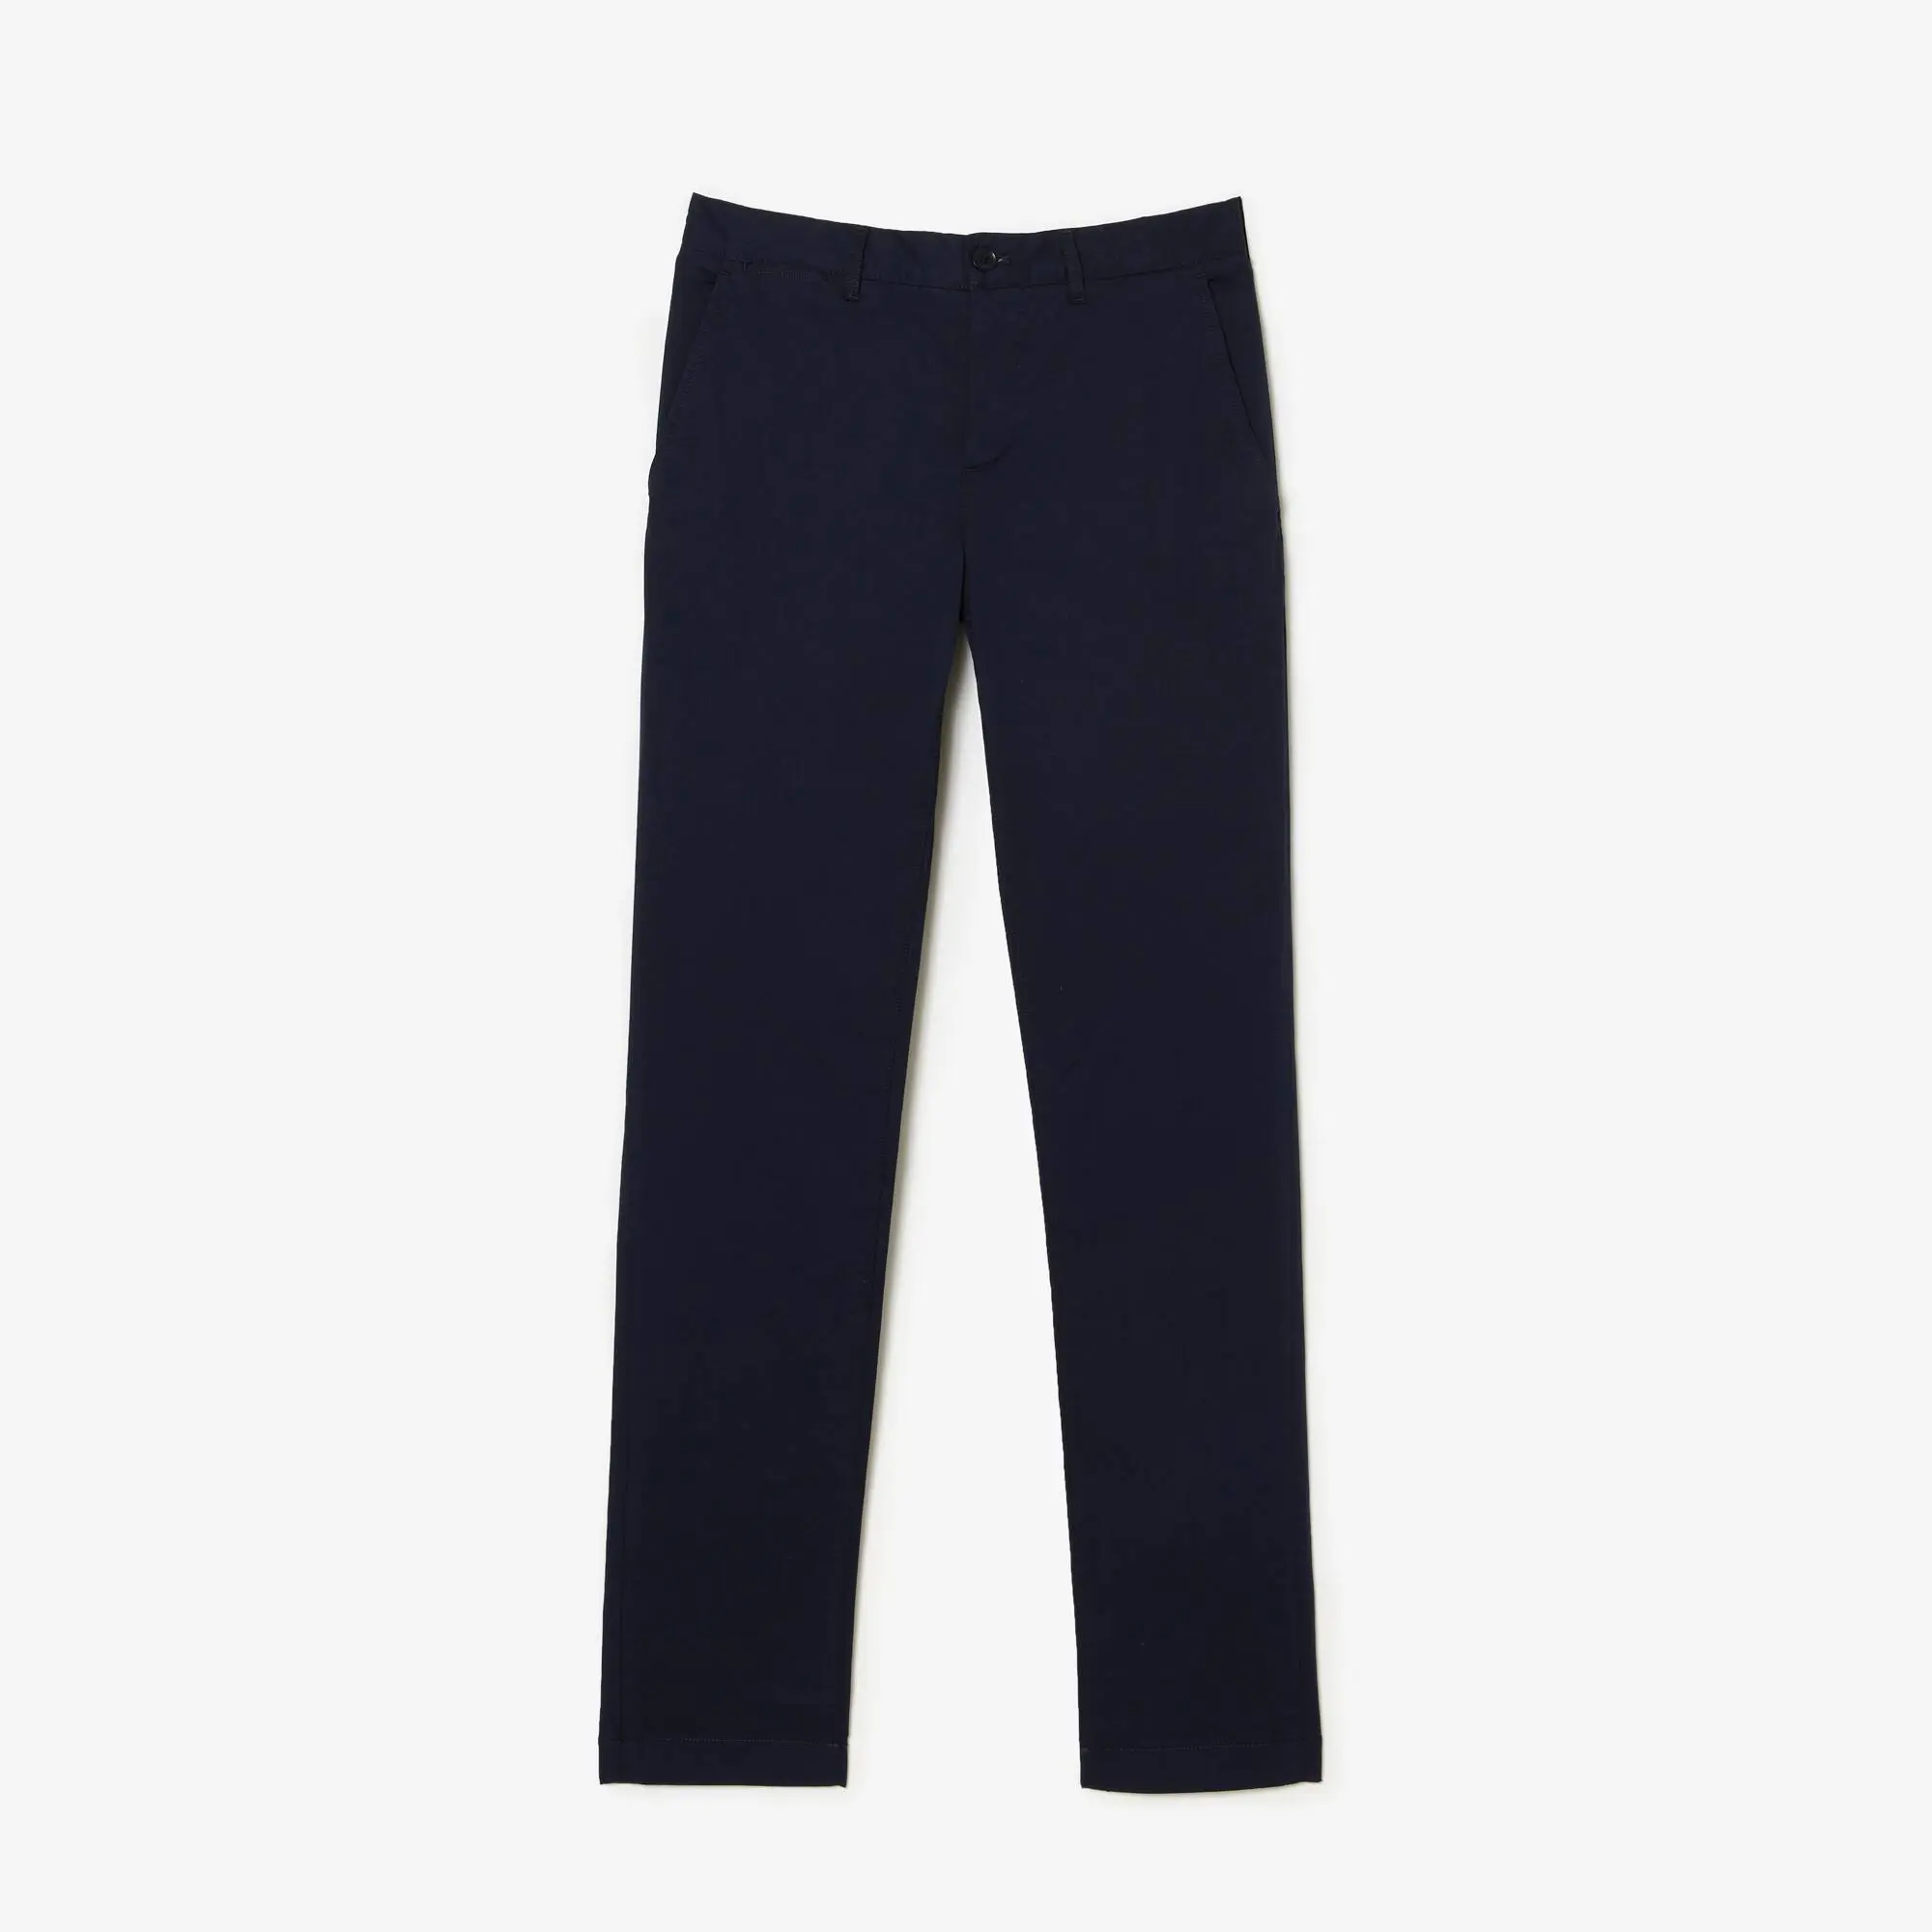 Lacoste Pantalon chino slim fit en coton stretch uni. 2